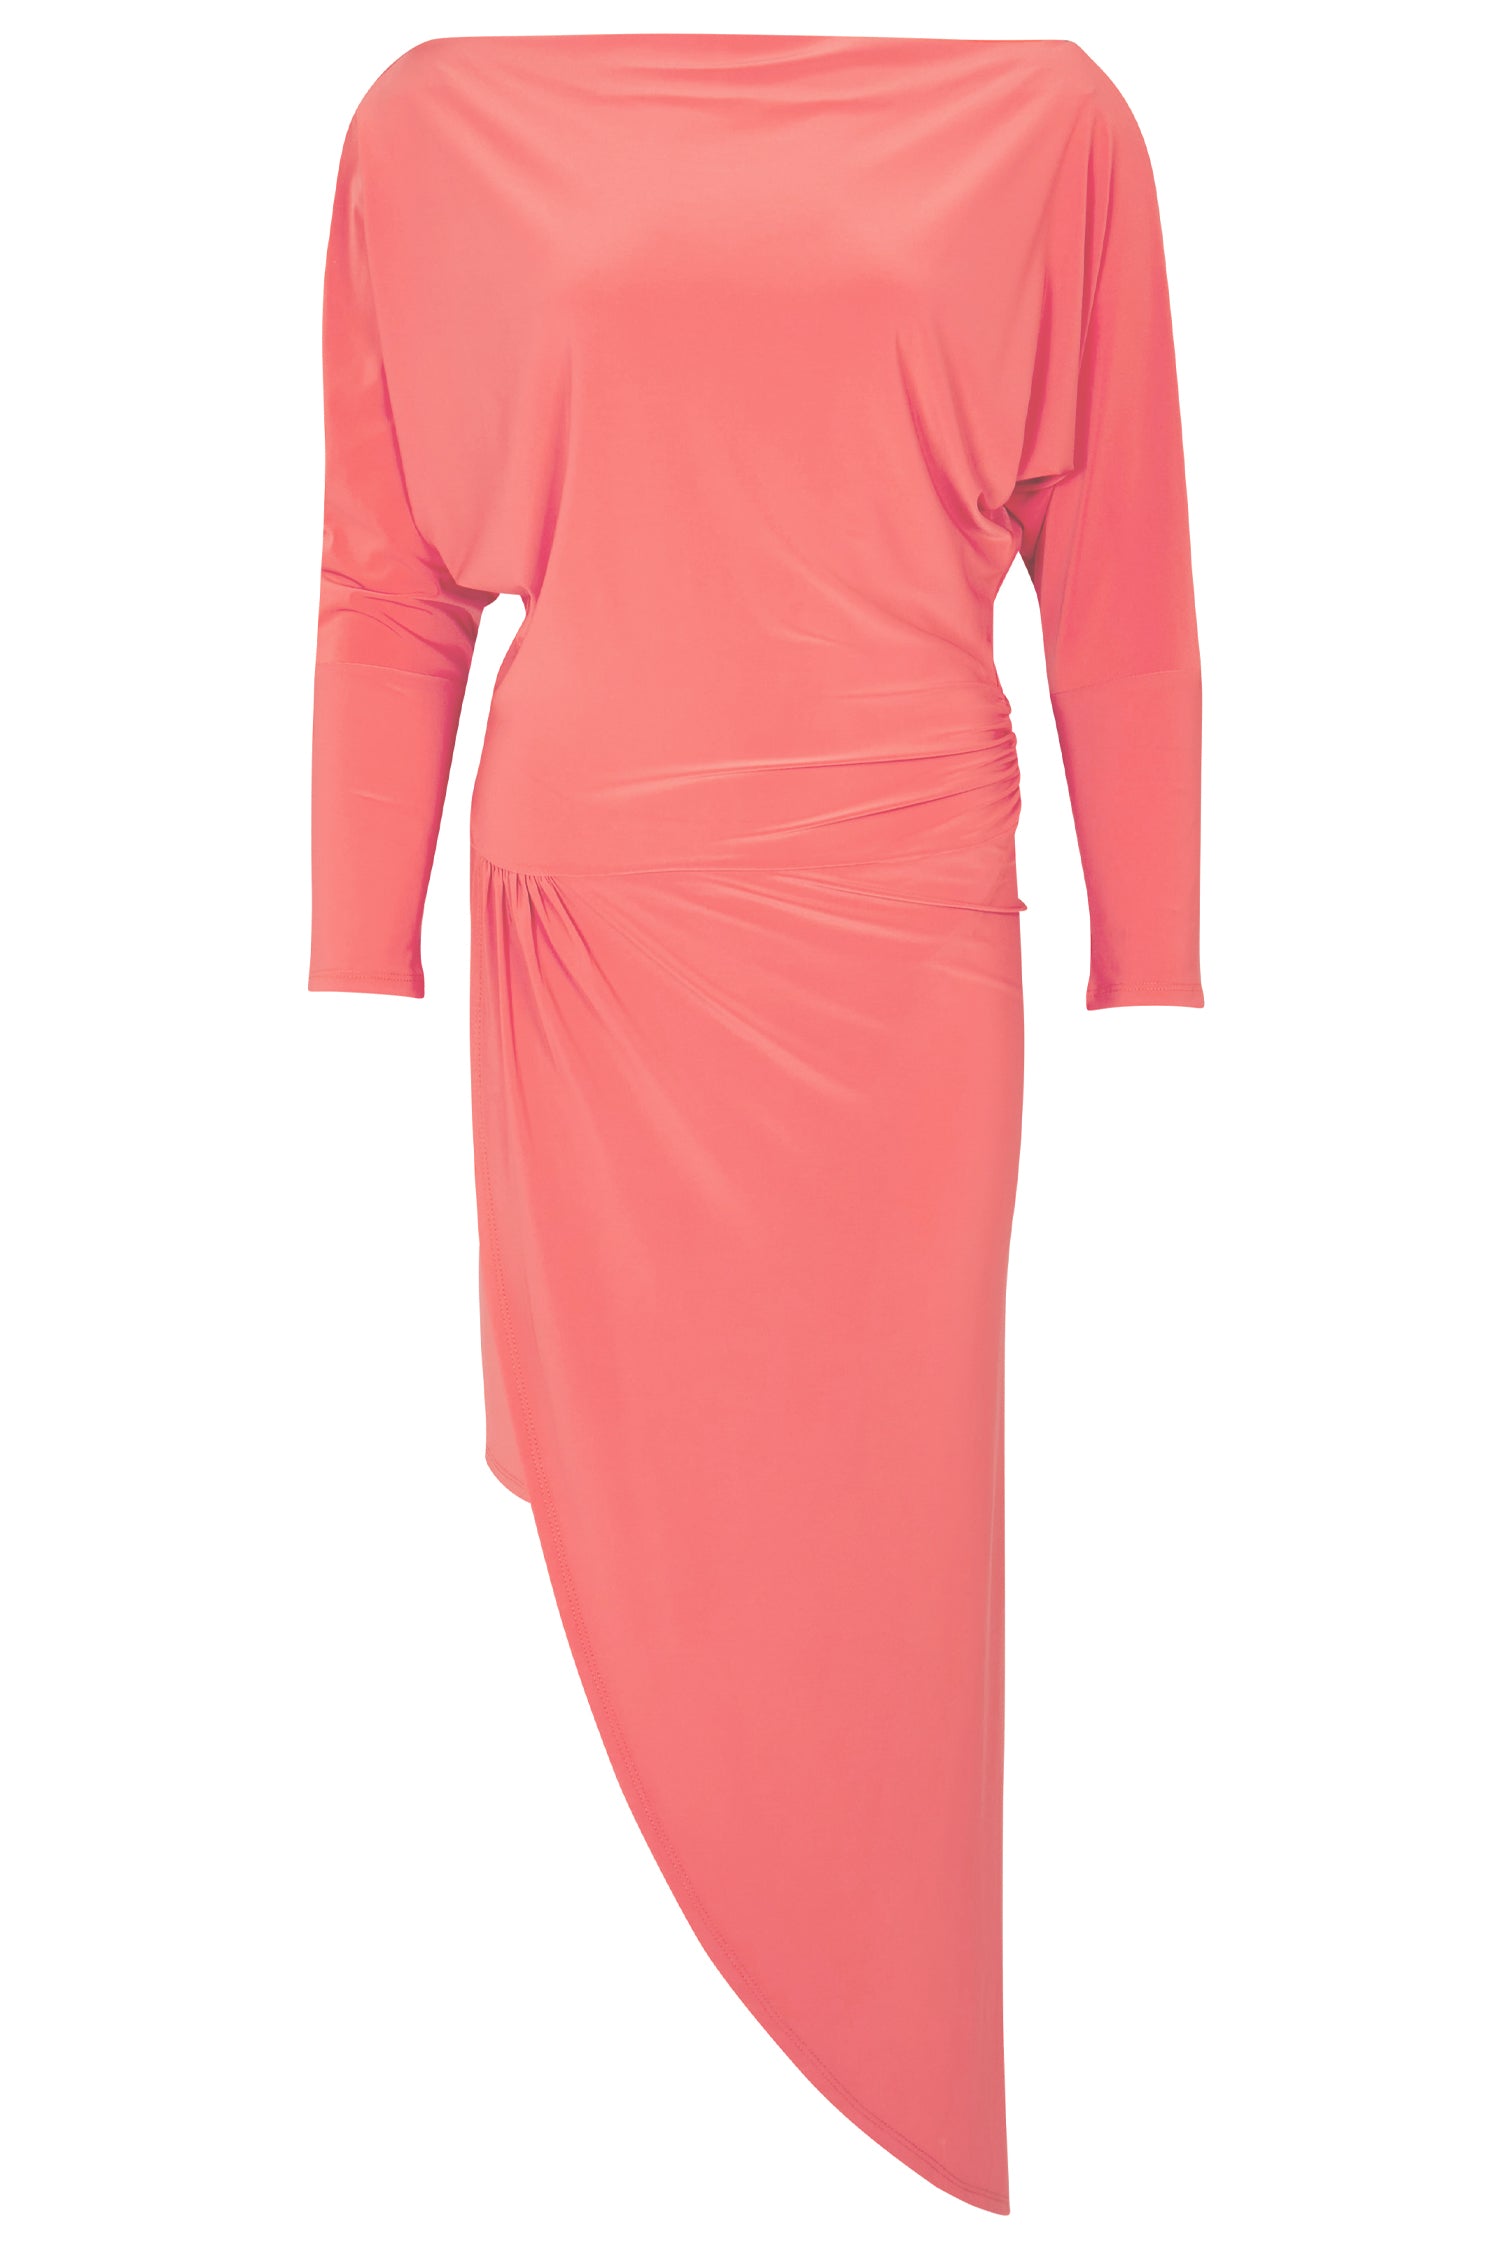 Coral Trish Dress